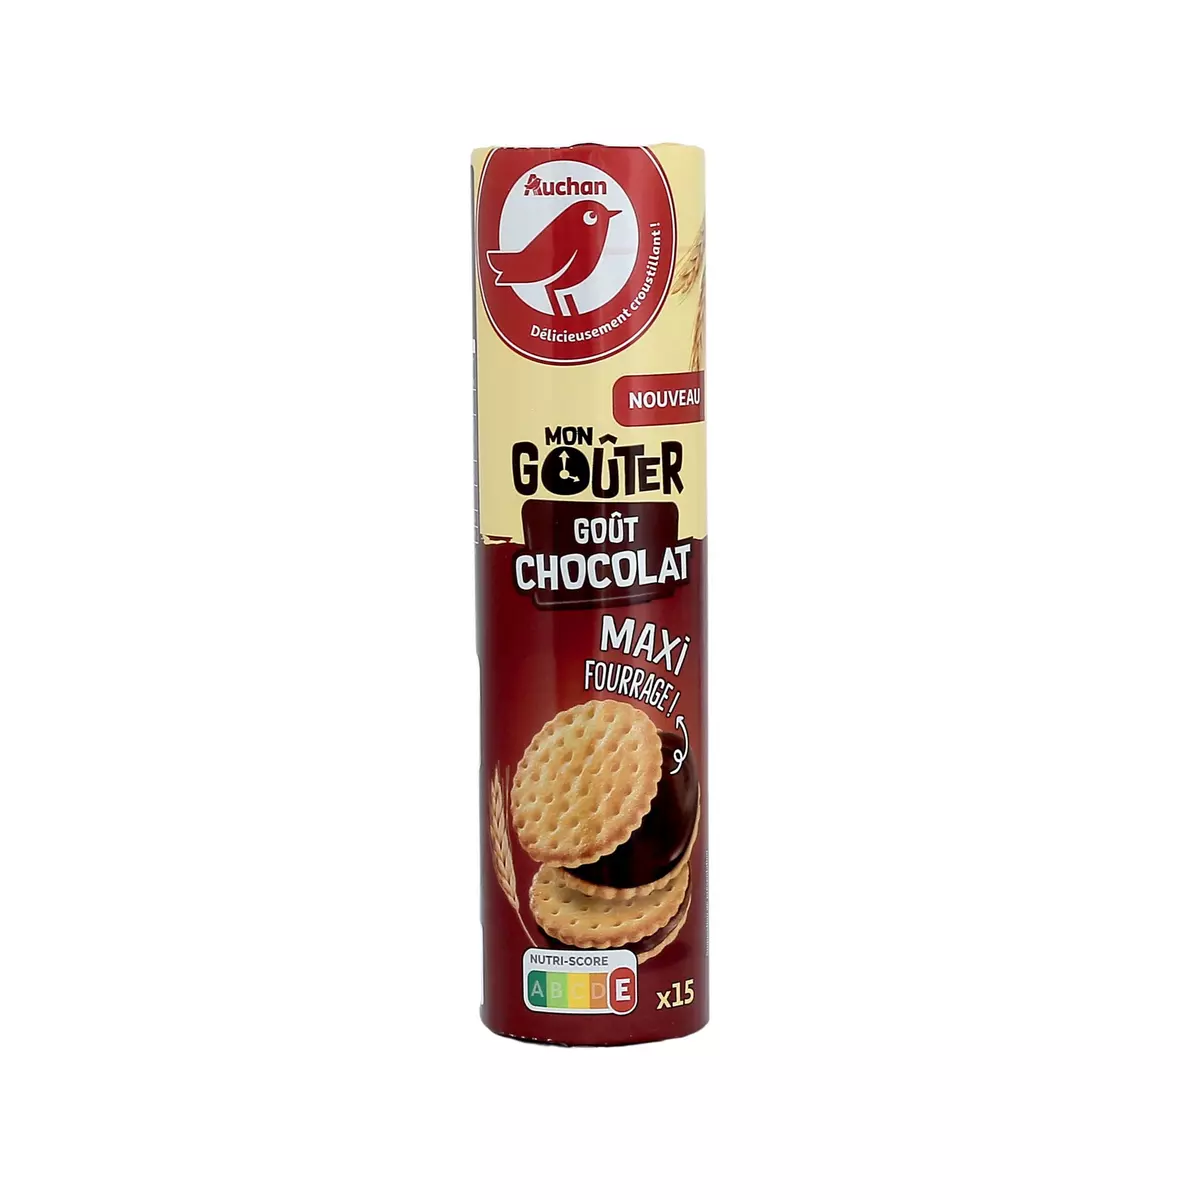 AUCHAN Mon goûter biscuit goût chocolat maxi fourrage 15 biscuits 275g